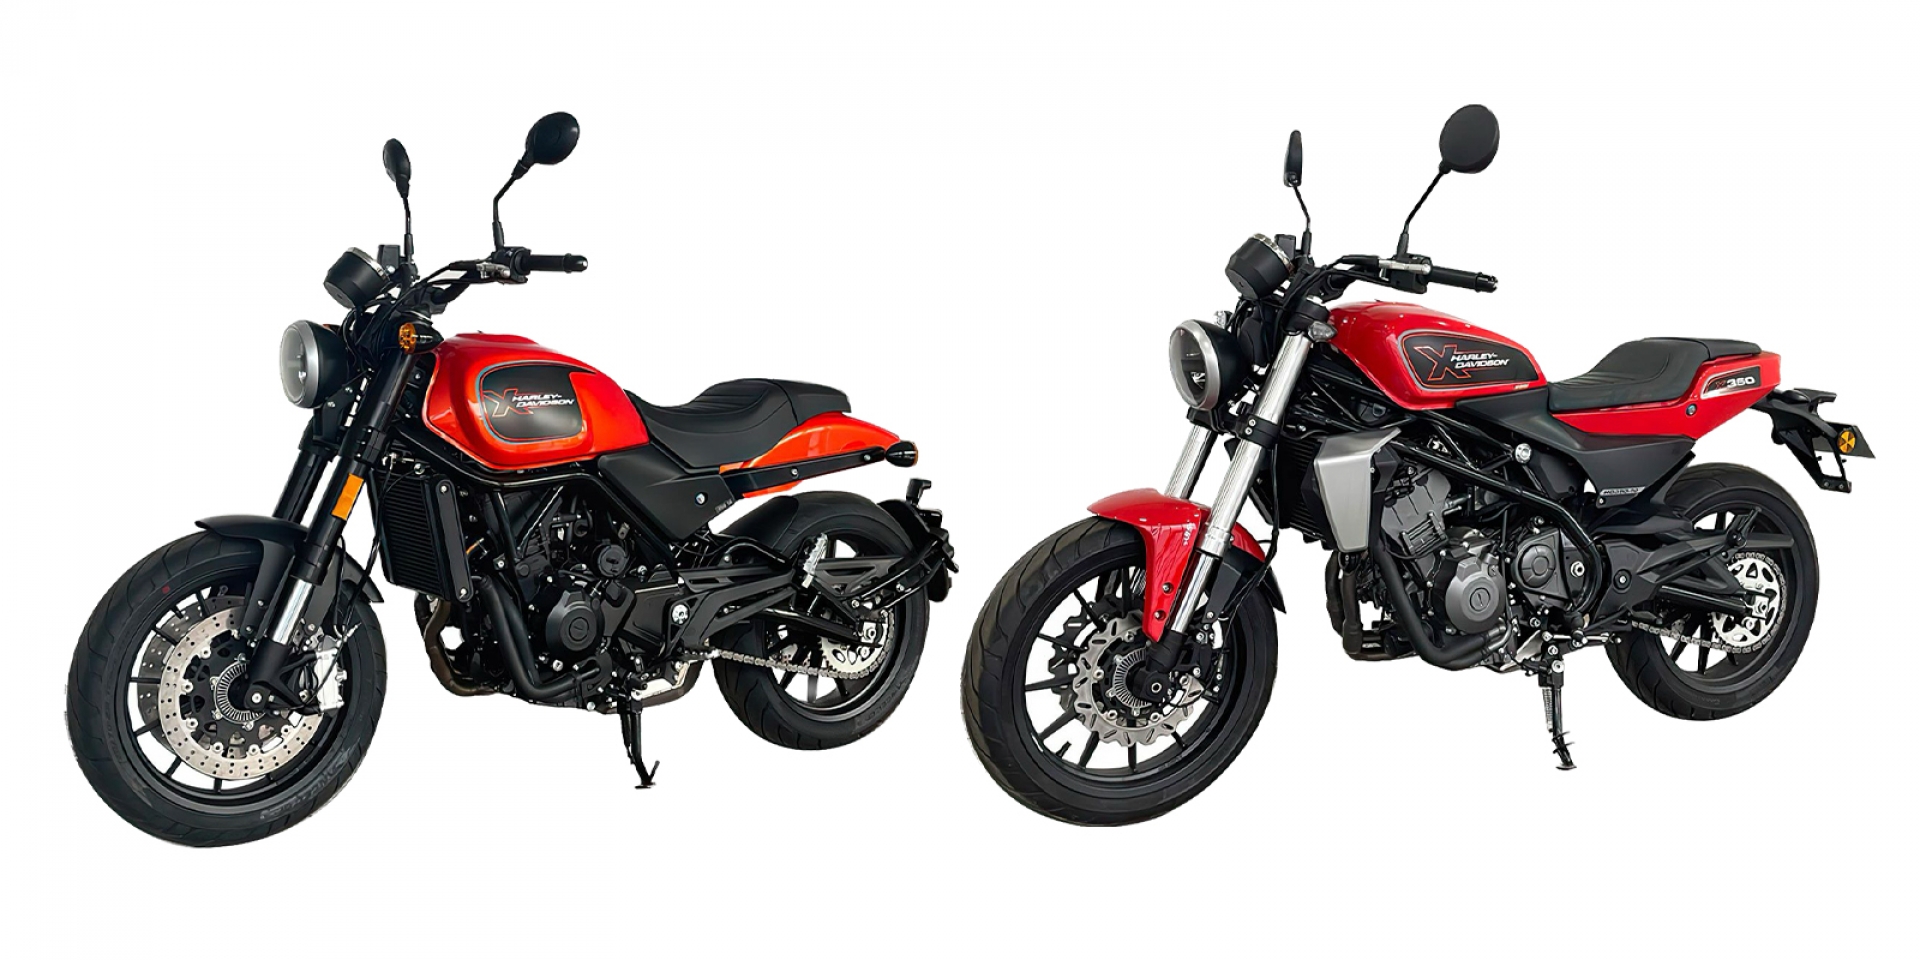 並列雙缸的平價哈雷！Harley-Davidson HD350/HD500 實車圖曝光